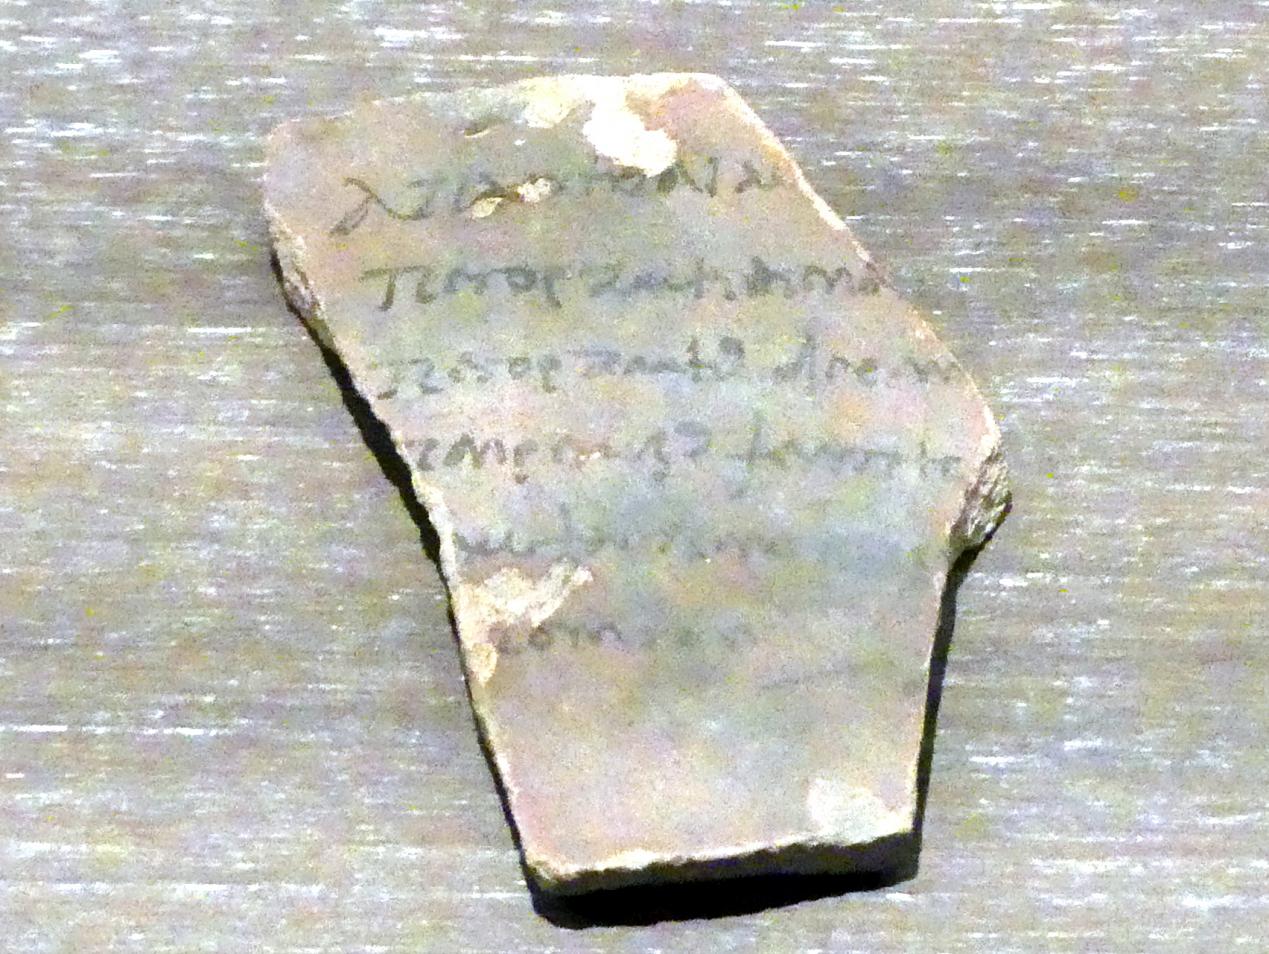 Ostrakon (Scherbe) mit einer Liste von Steuereintreibern in griechischer Sprache, Römische Kaiserzeit, 27 v. Chr. - 54 n. Chr., 200